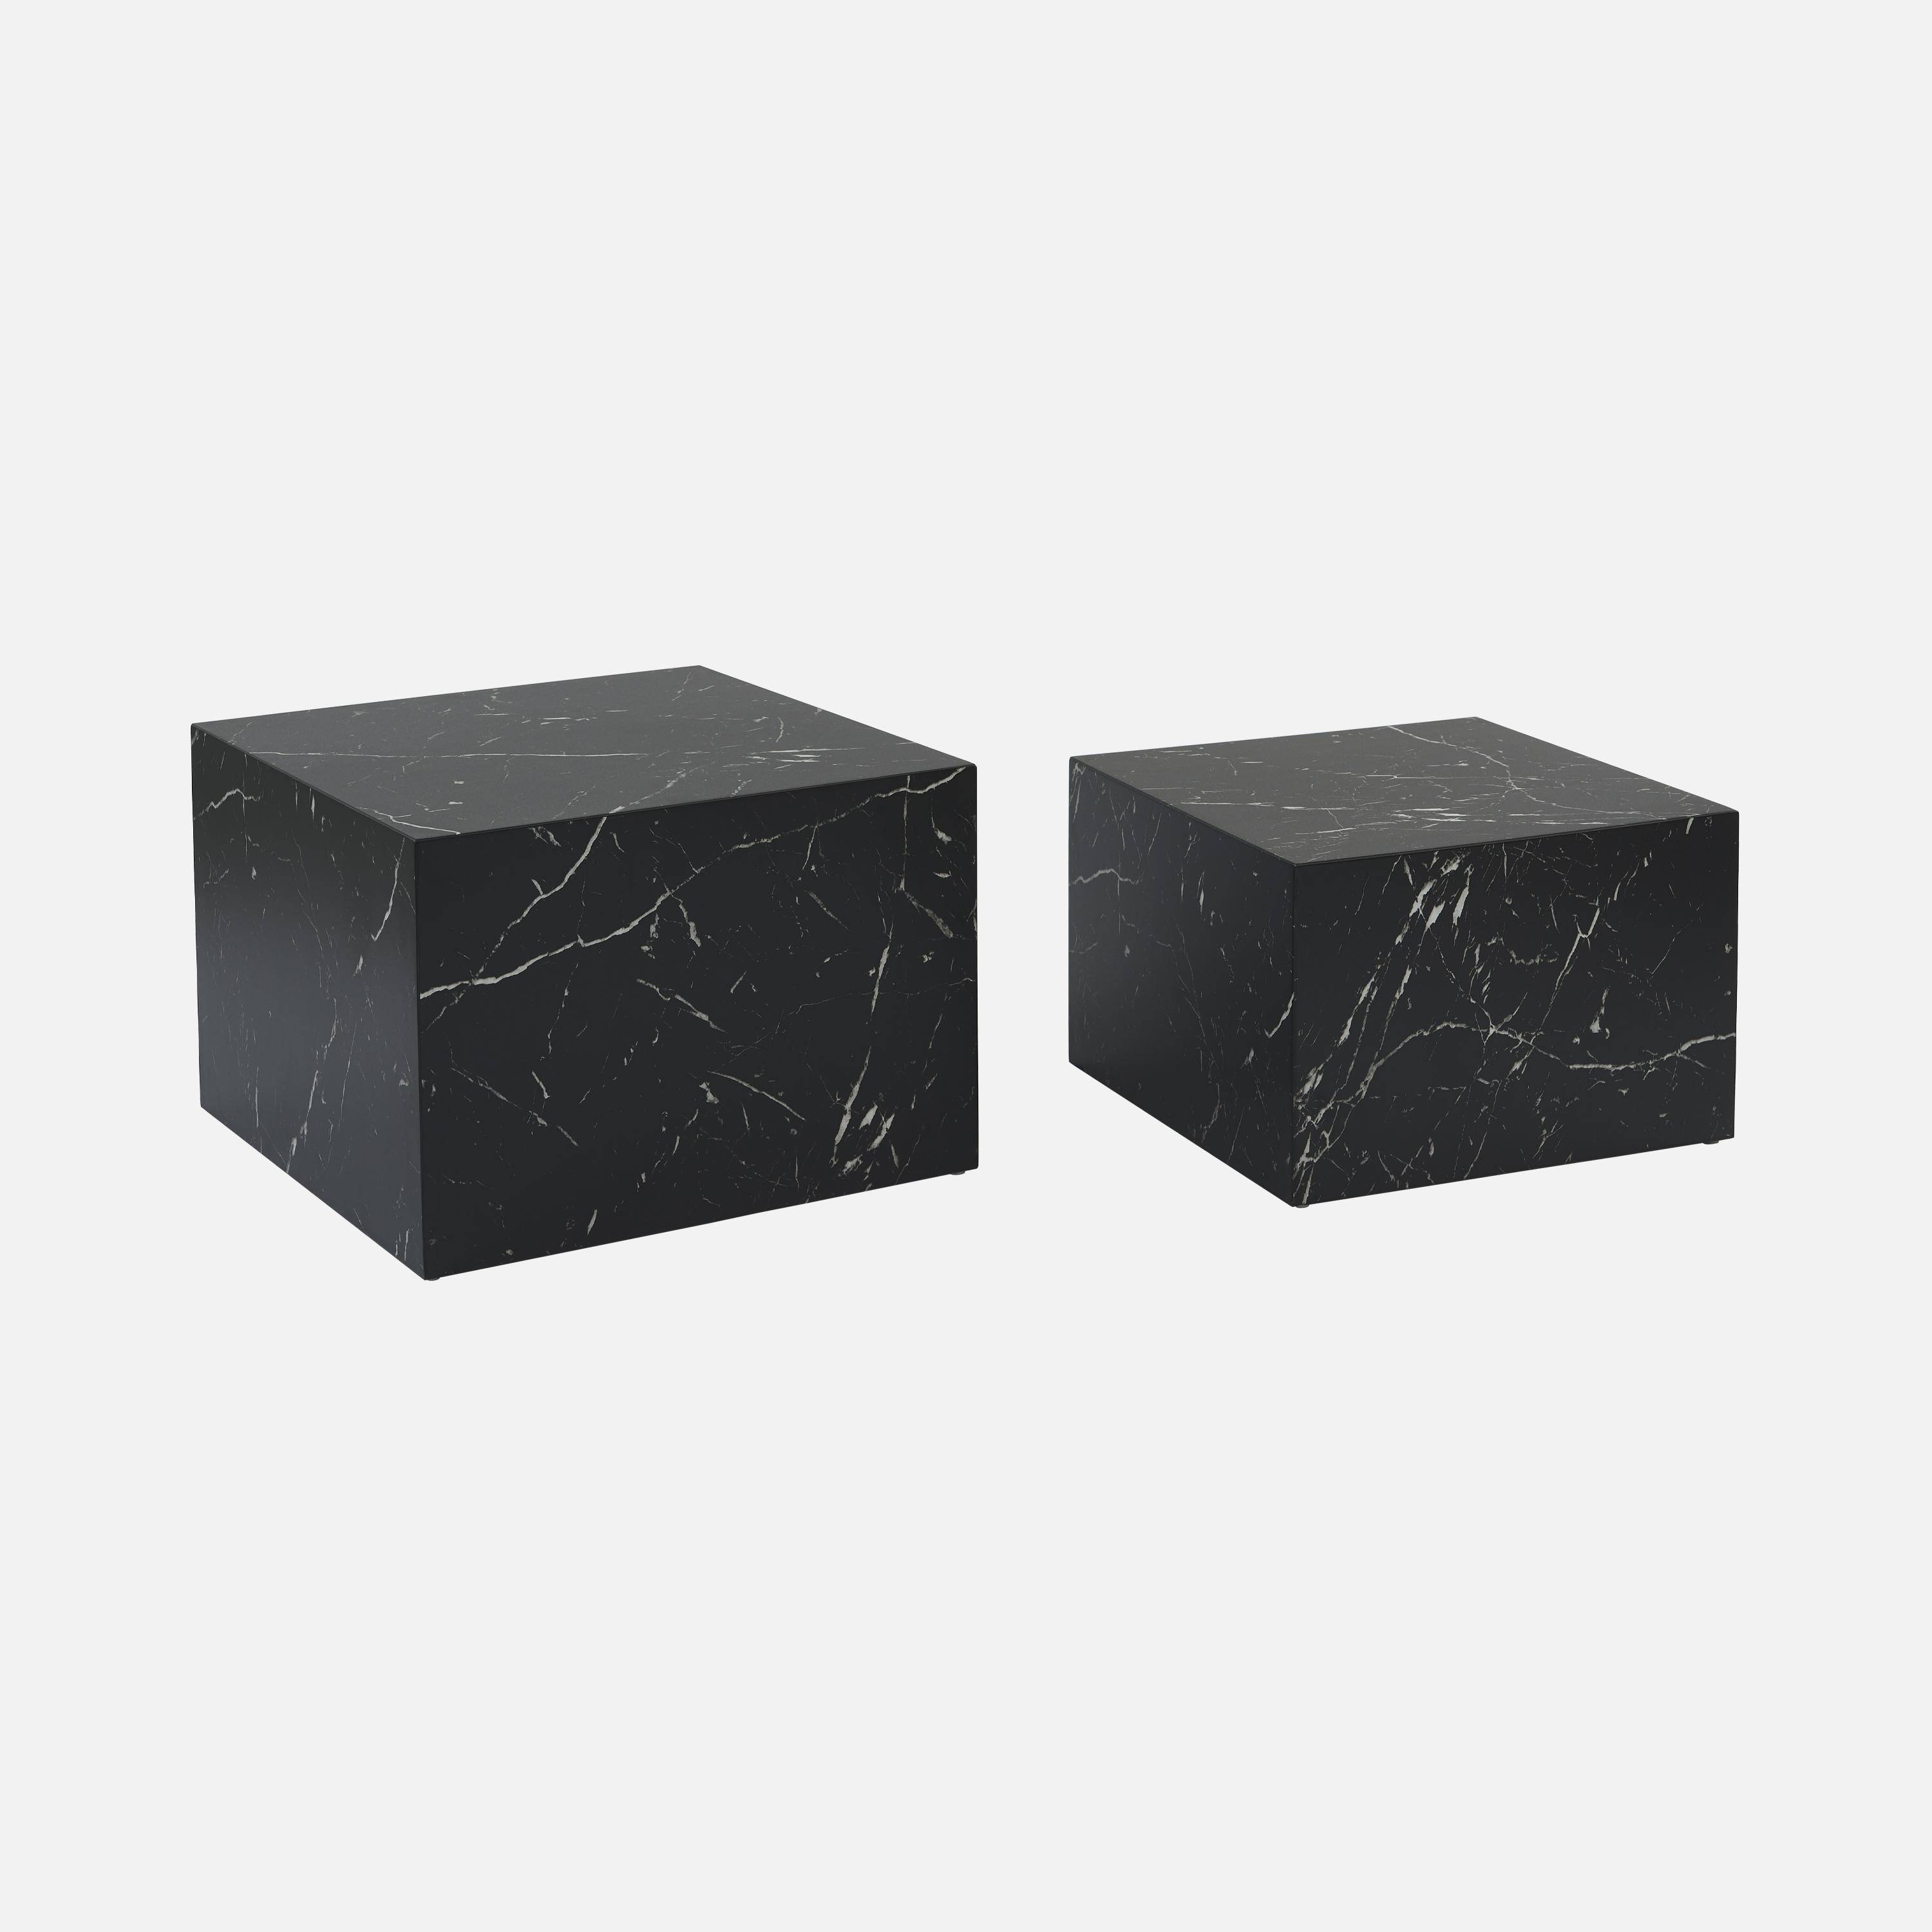 Conjunto de 2 mesas de centro com efeito de mármore preto, C 58 x L 58 x A 40cm / C 50 x L 50 x A 33cm Photo5